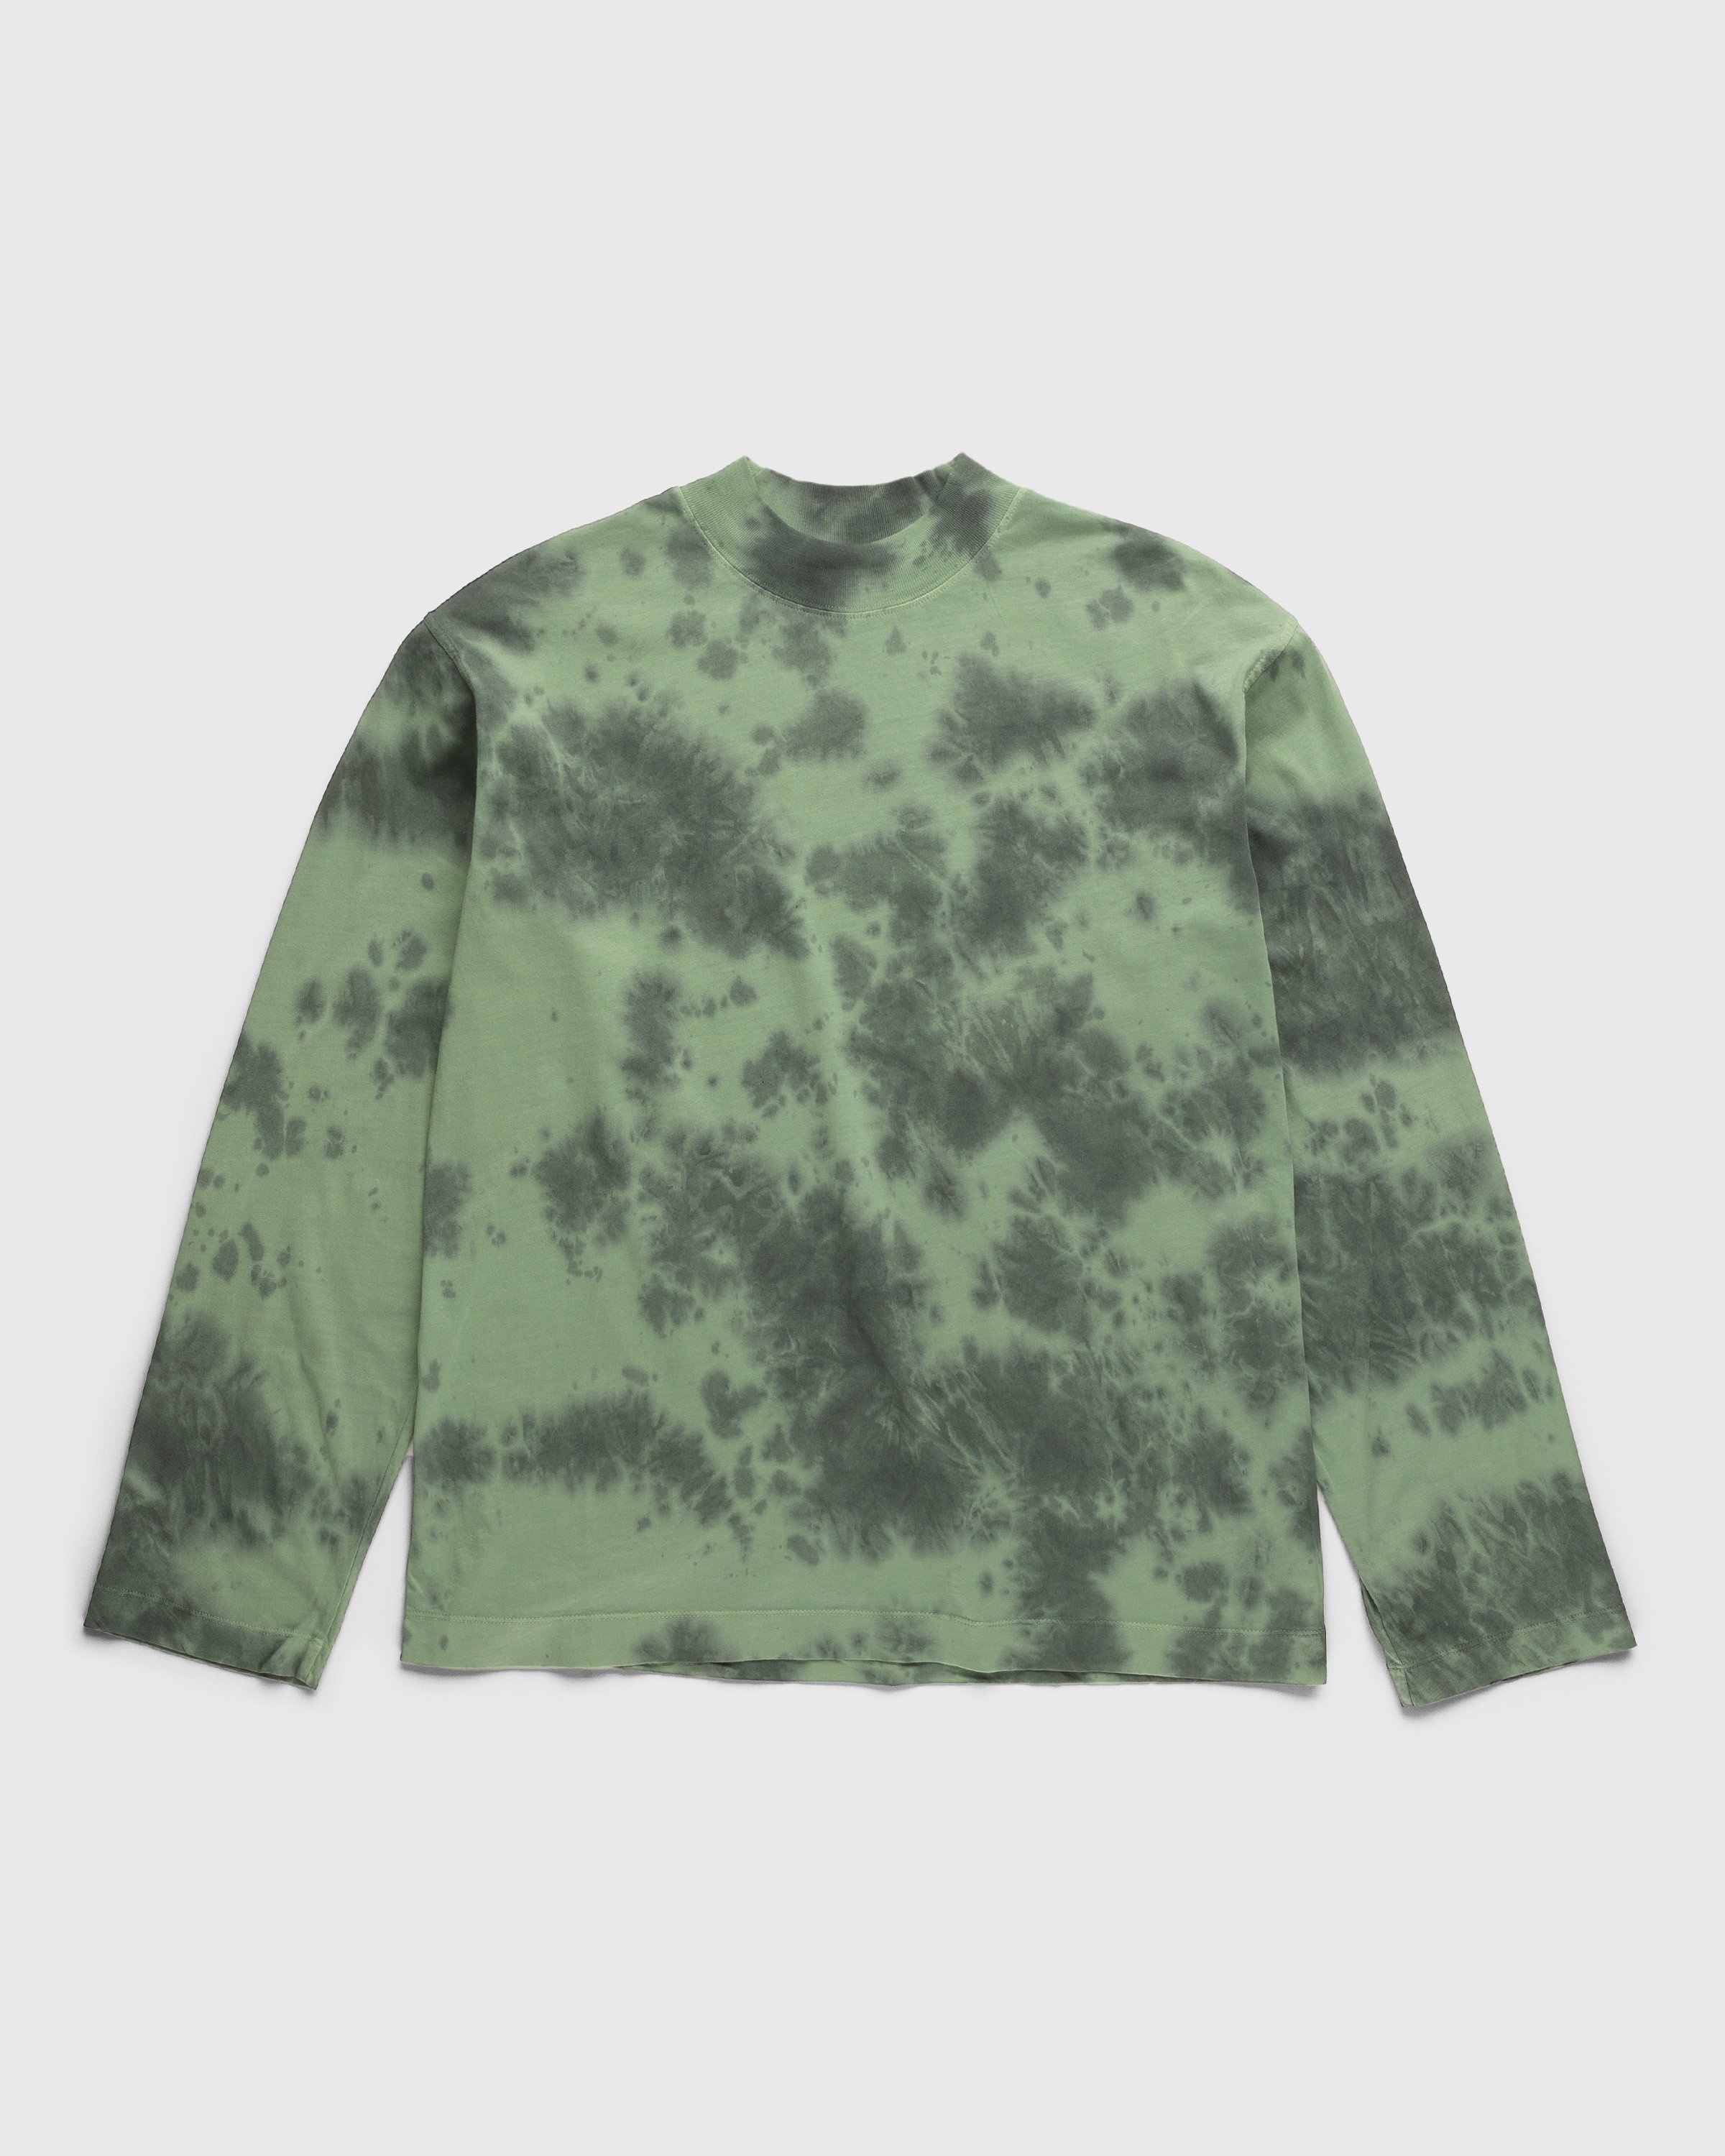 Dries van Noten – Heger T-Shirt Green - Longsleeve Shirts - Green - Image 1